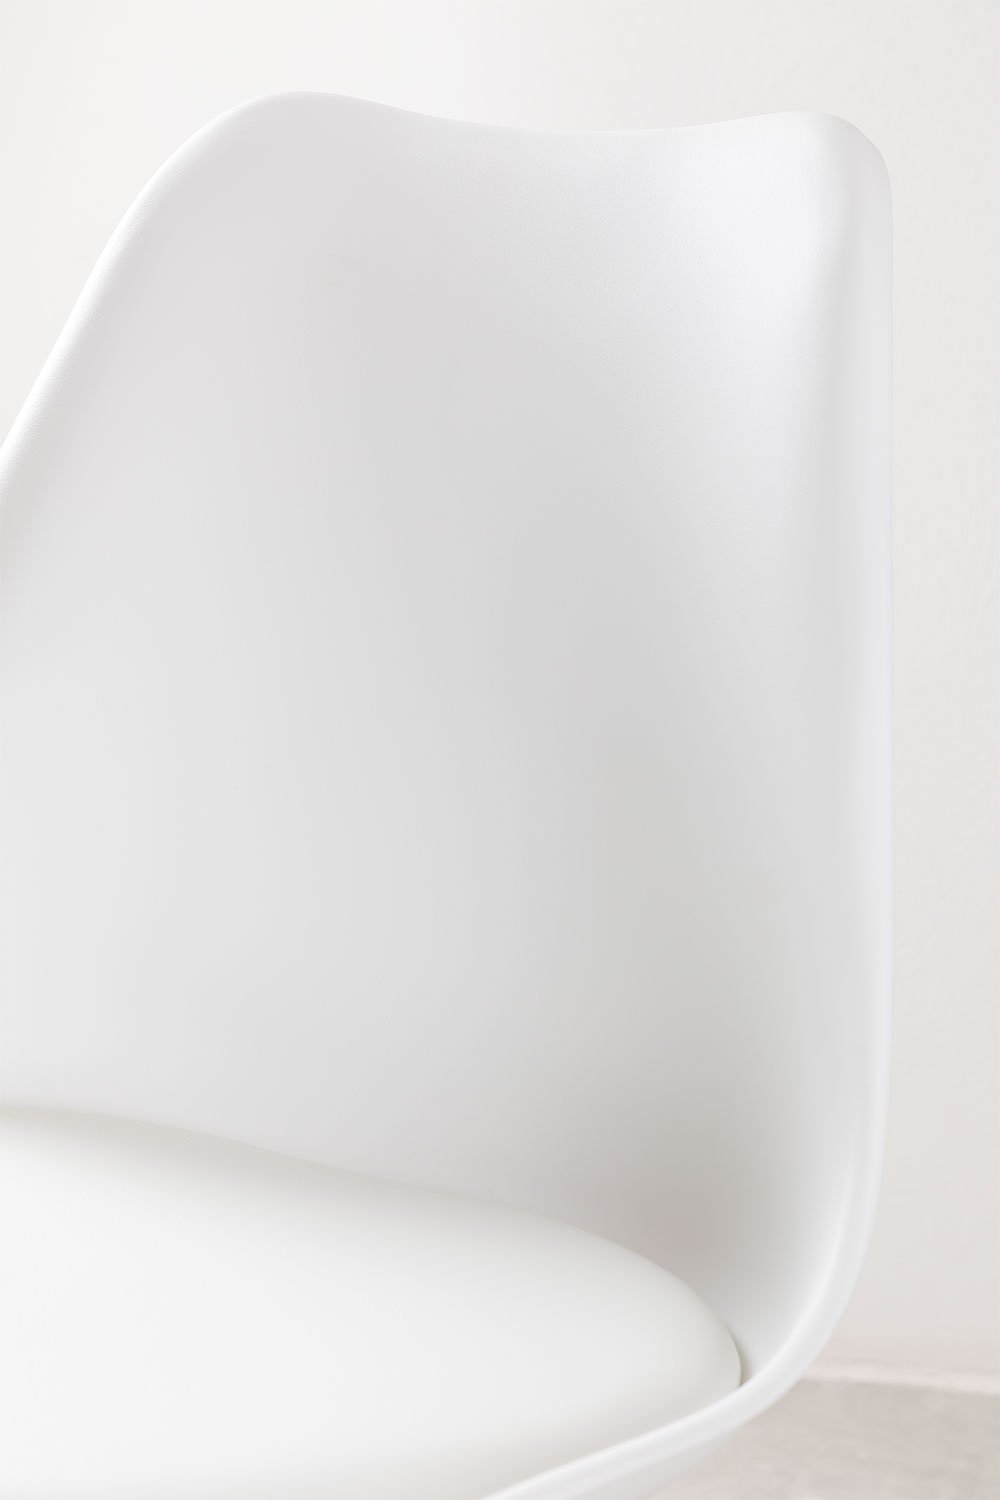 Taburete Alto Con Cojín en Polipiel Nordic ↑67 cm Blanco -  SKLUM